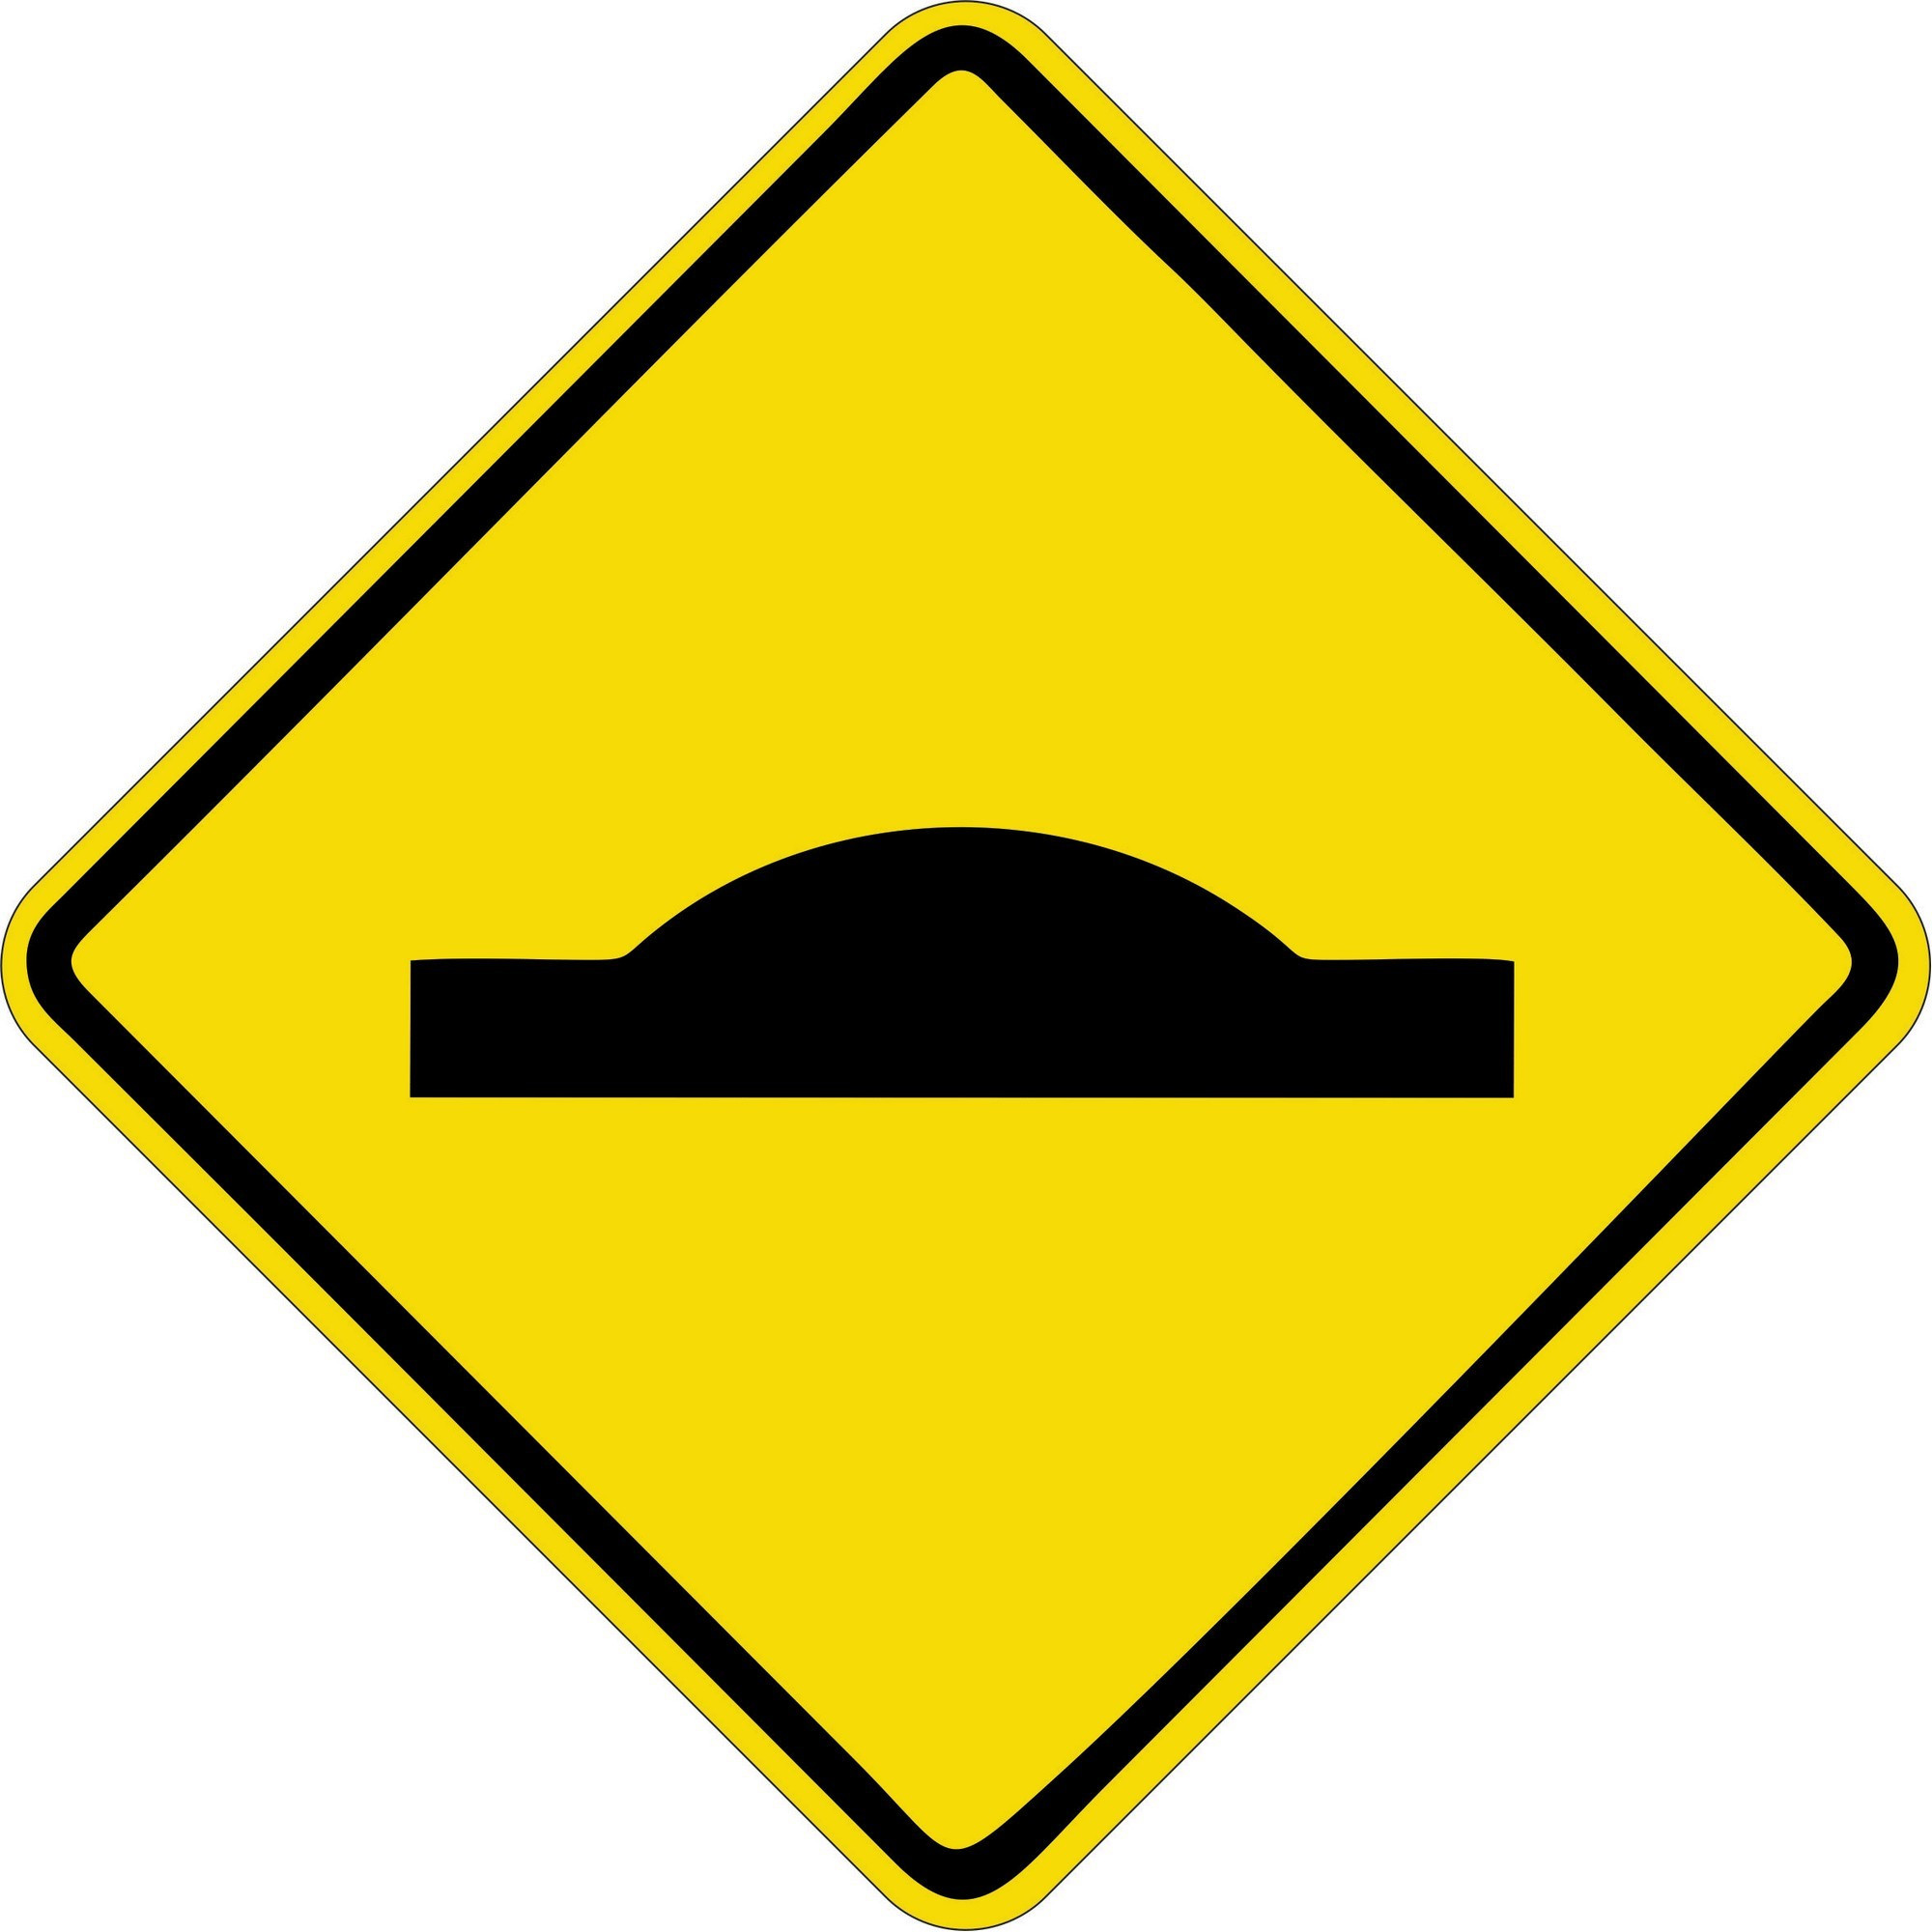 Símbolos de prevenção rodoviária ou sinais de trânsito